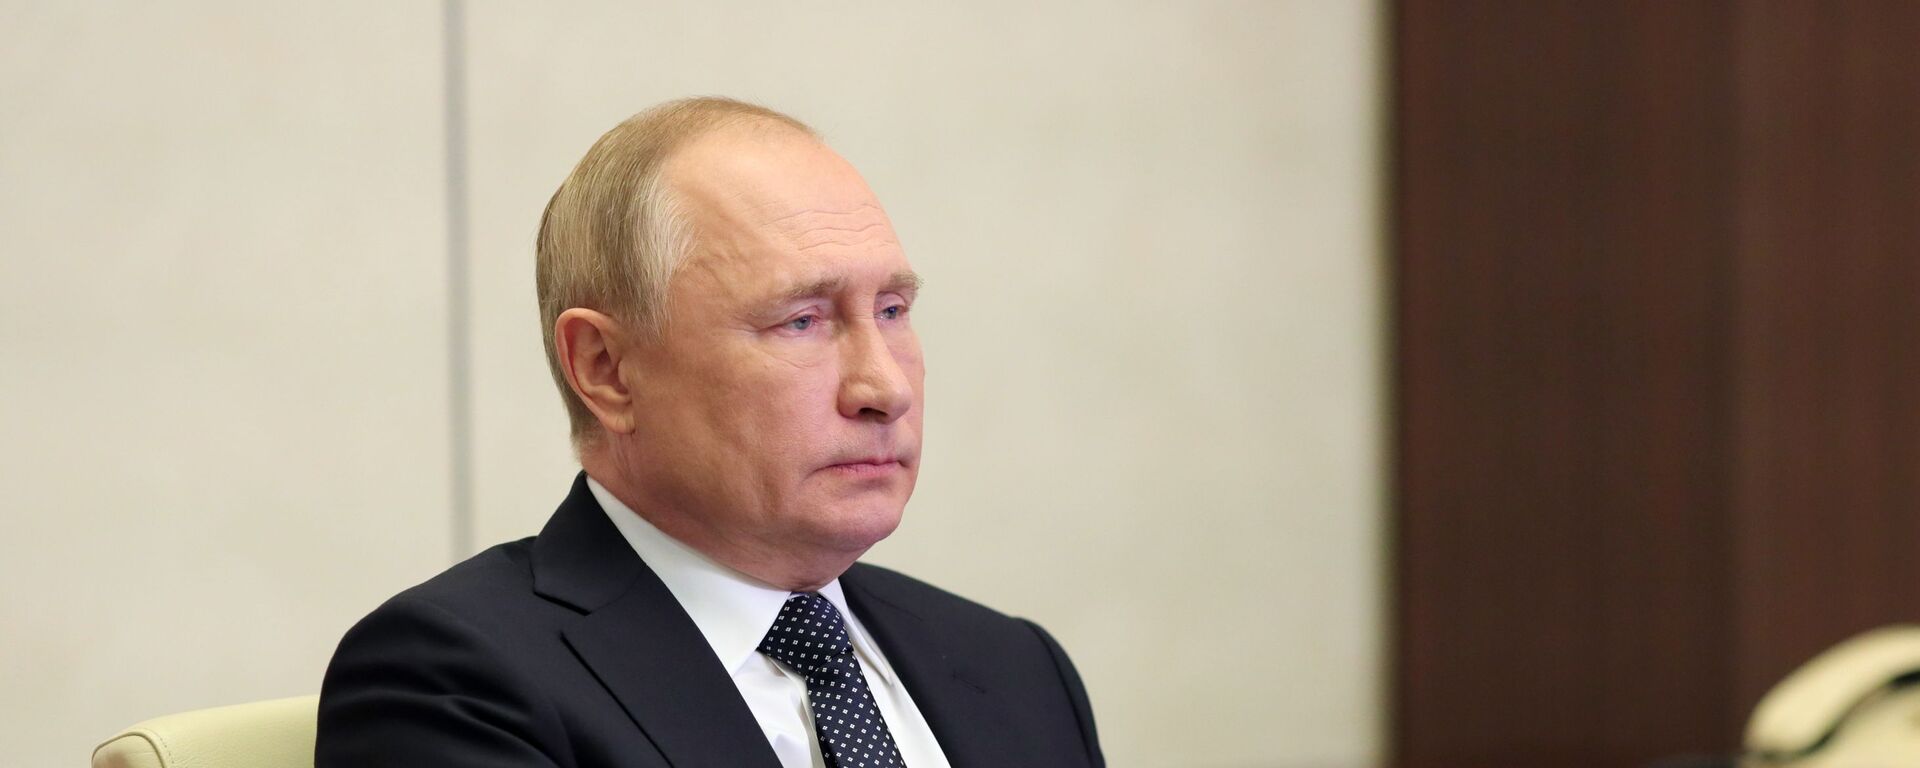 الرئيس الروسي فلاديمير بوتين خلال مشاركته في مؤتمر قمة مجموعة العشرين، روسيا 31 أكتوبر 2021 - سبوتنيك عربي, 1920, 24.11.2021